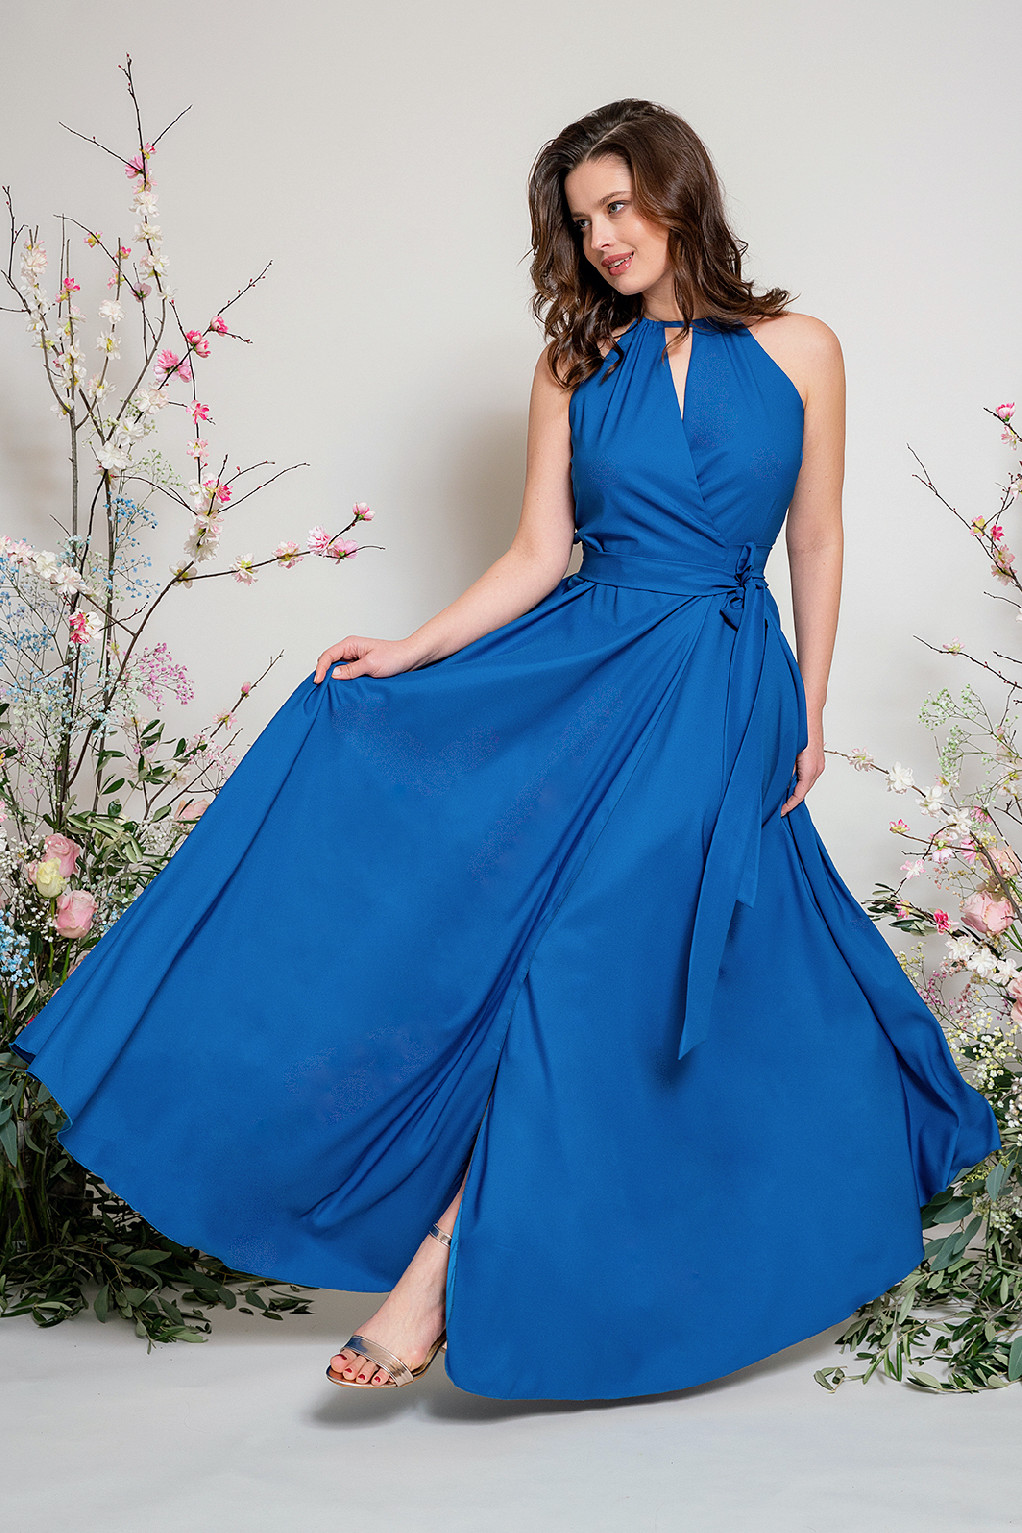 Dlouhé zavinovací šaty vel. 42+ Modrá /bright blue/, 42 - 46 (vel. do: prsa 108, pas 92)